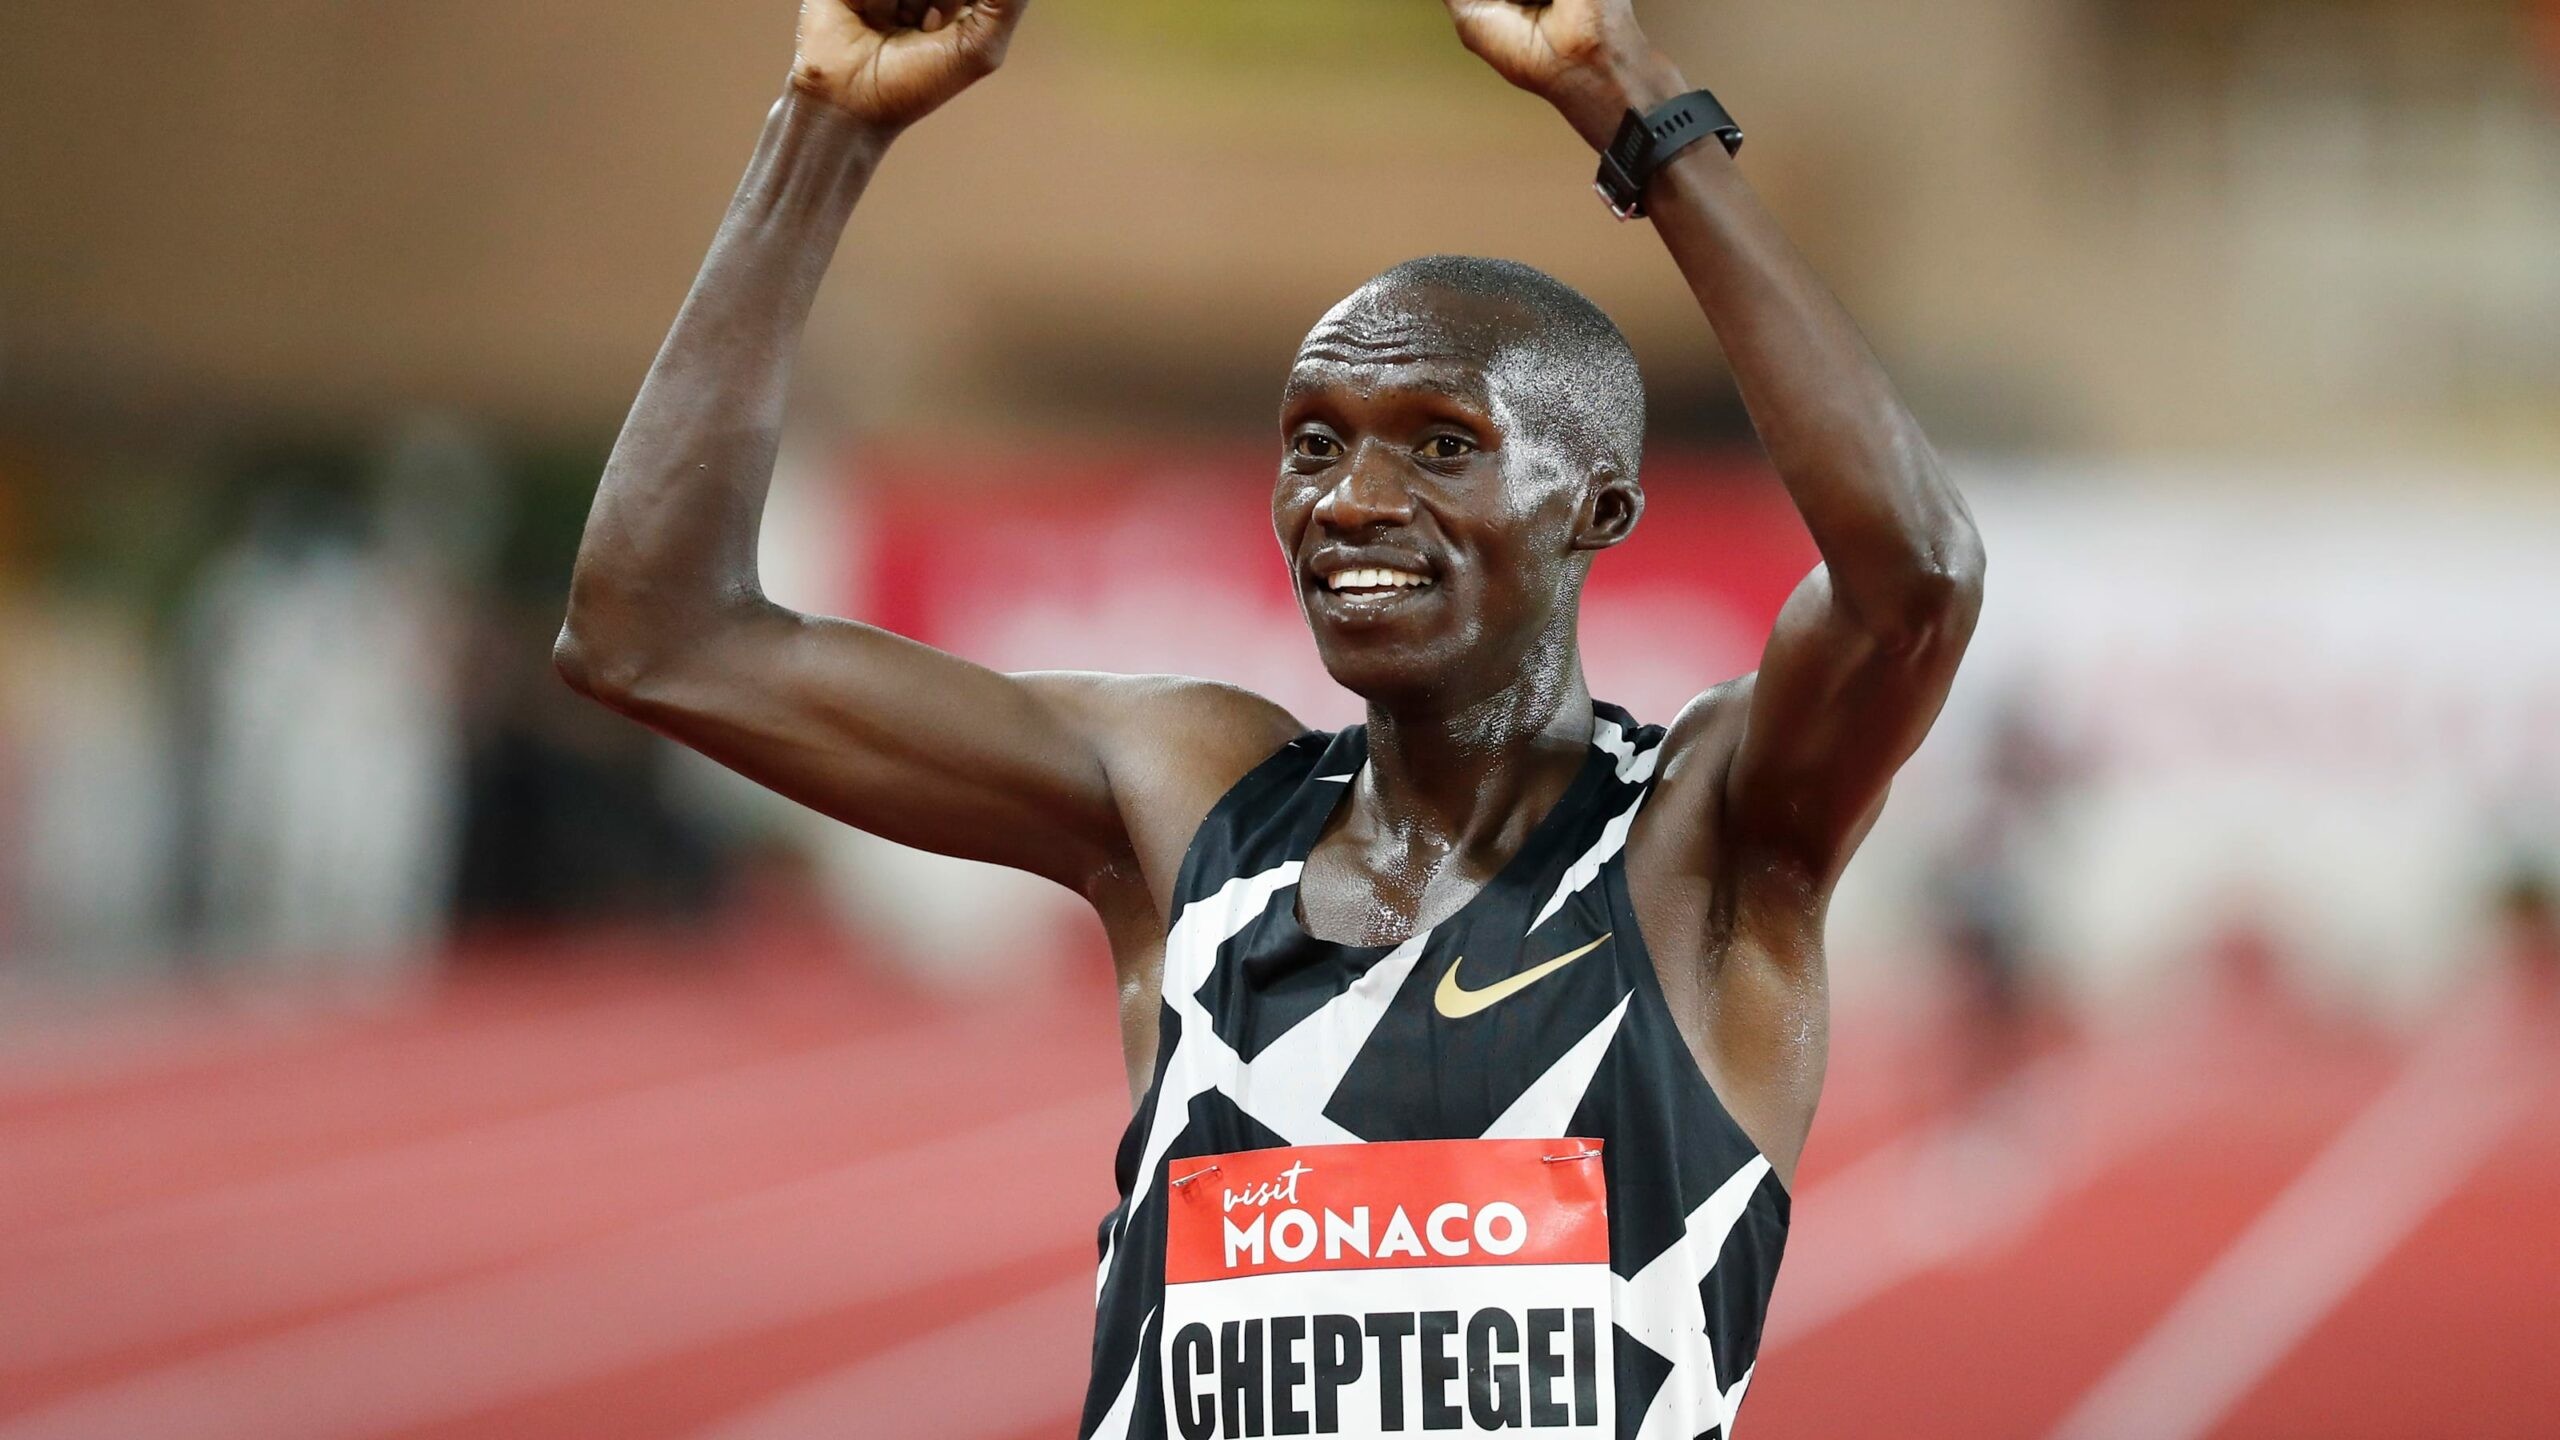 Joshua Cheptegei will go for Komen's legendary 3000-Meter World Record on Wednesday